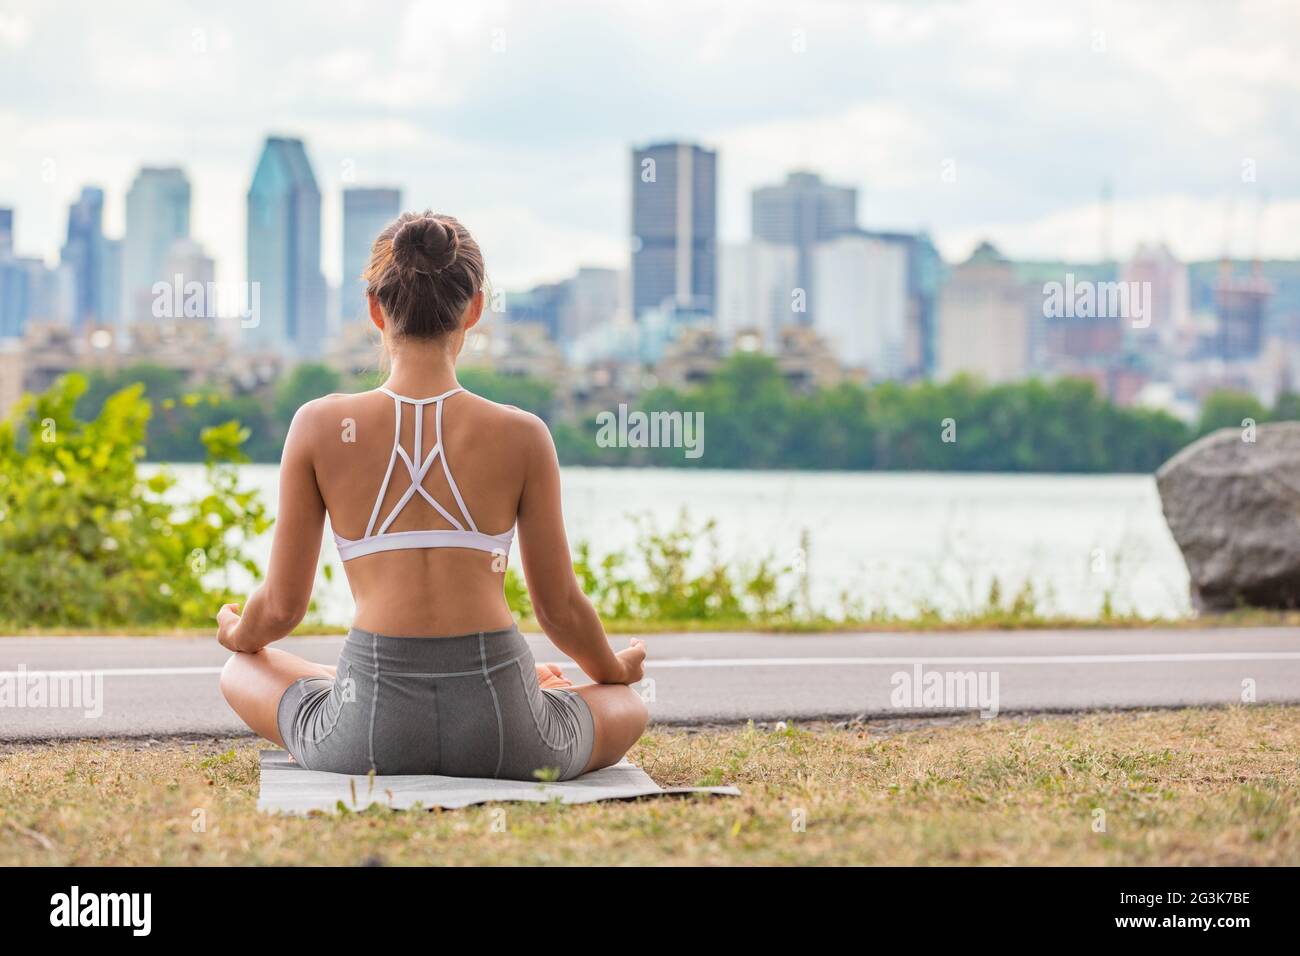 Zen-Yoga-Kurs draußen im Stadtpark Frau Wellness meditiert in Lotus Pose im Freien auf Matte und Gras. Mädchen von hinten sitzend Stockfoto